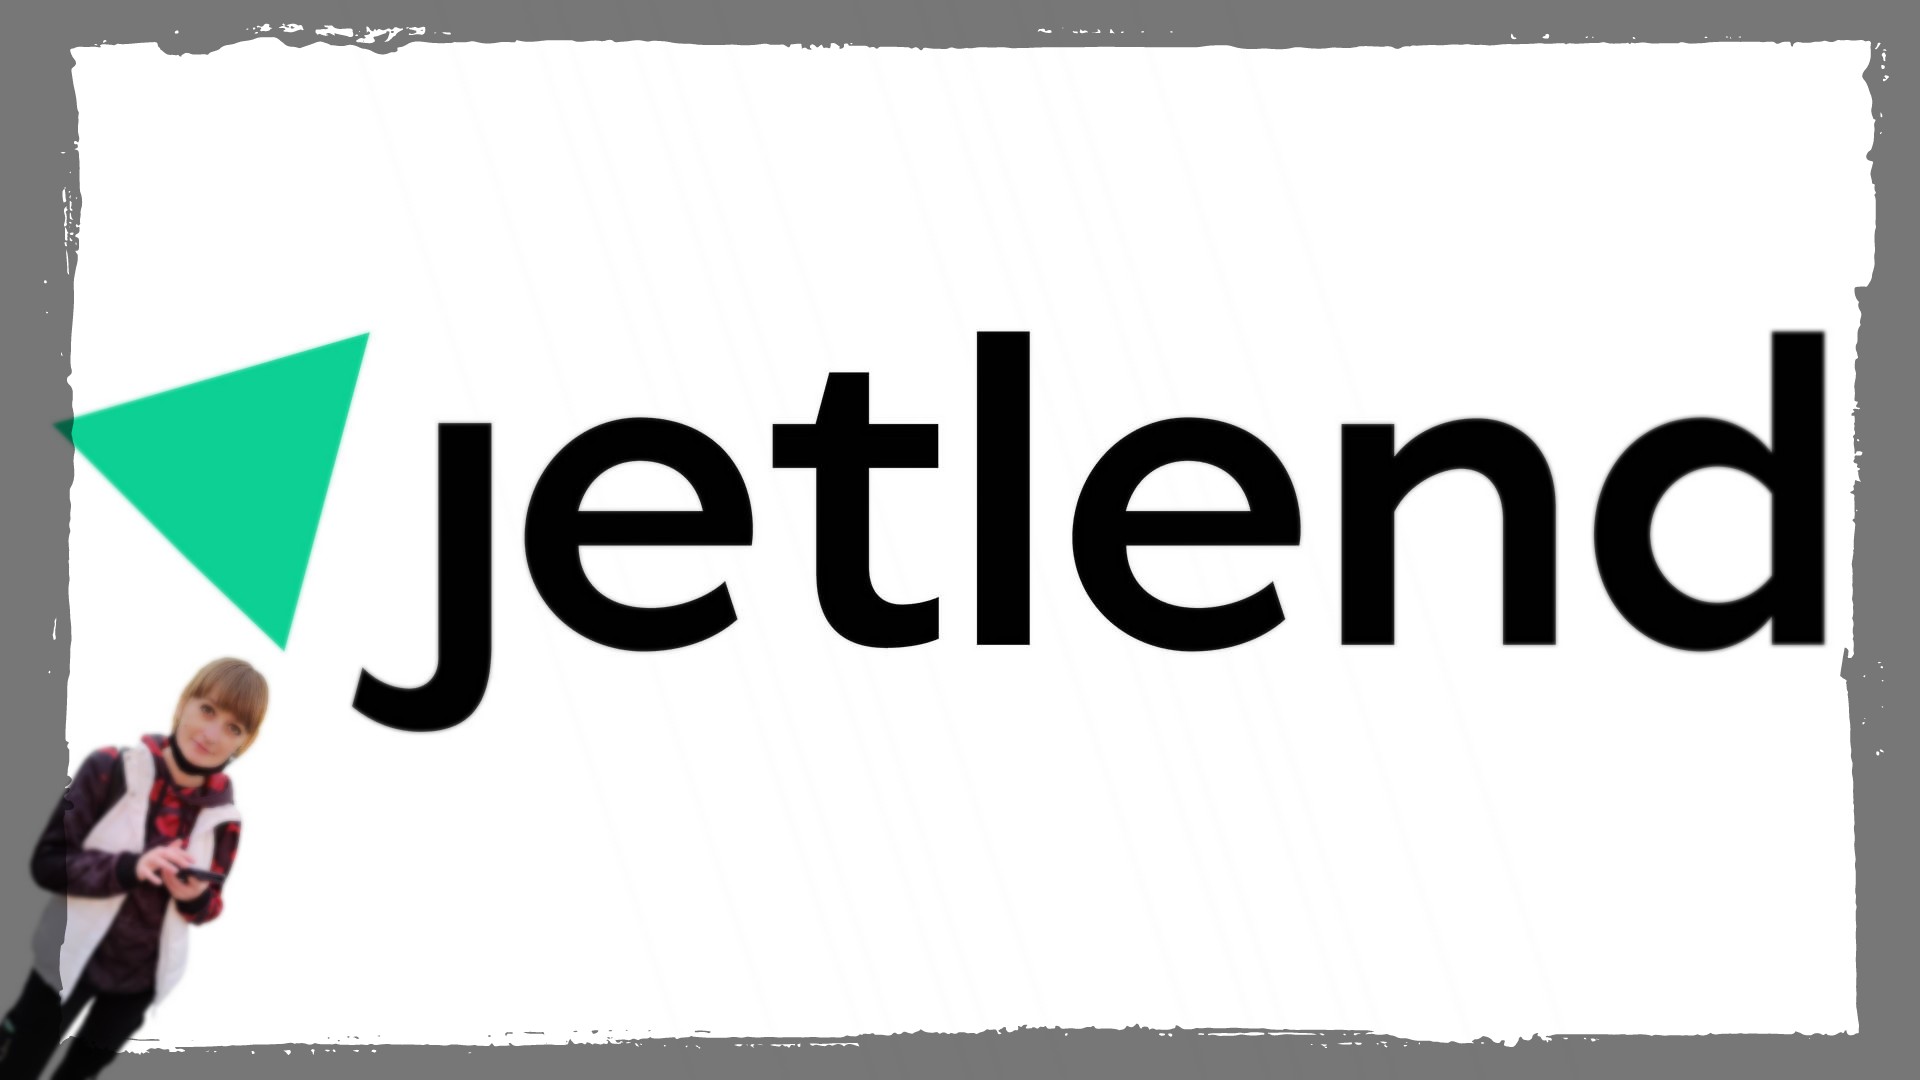 Джетленд (Jetlend) инвестиционная платформа отзыв - эксперимент